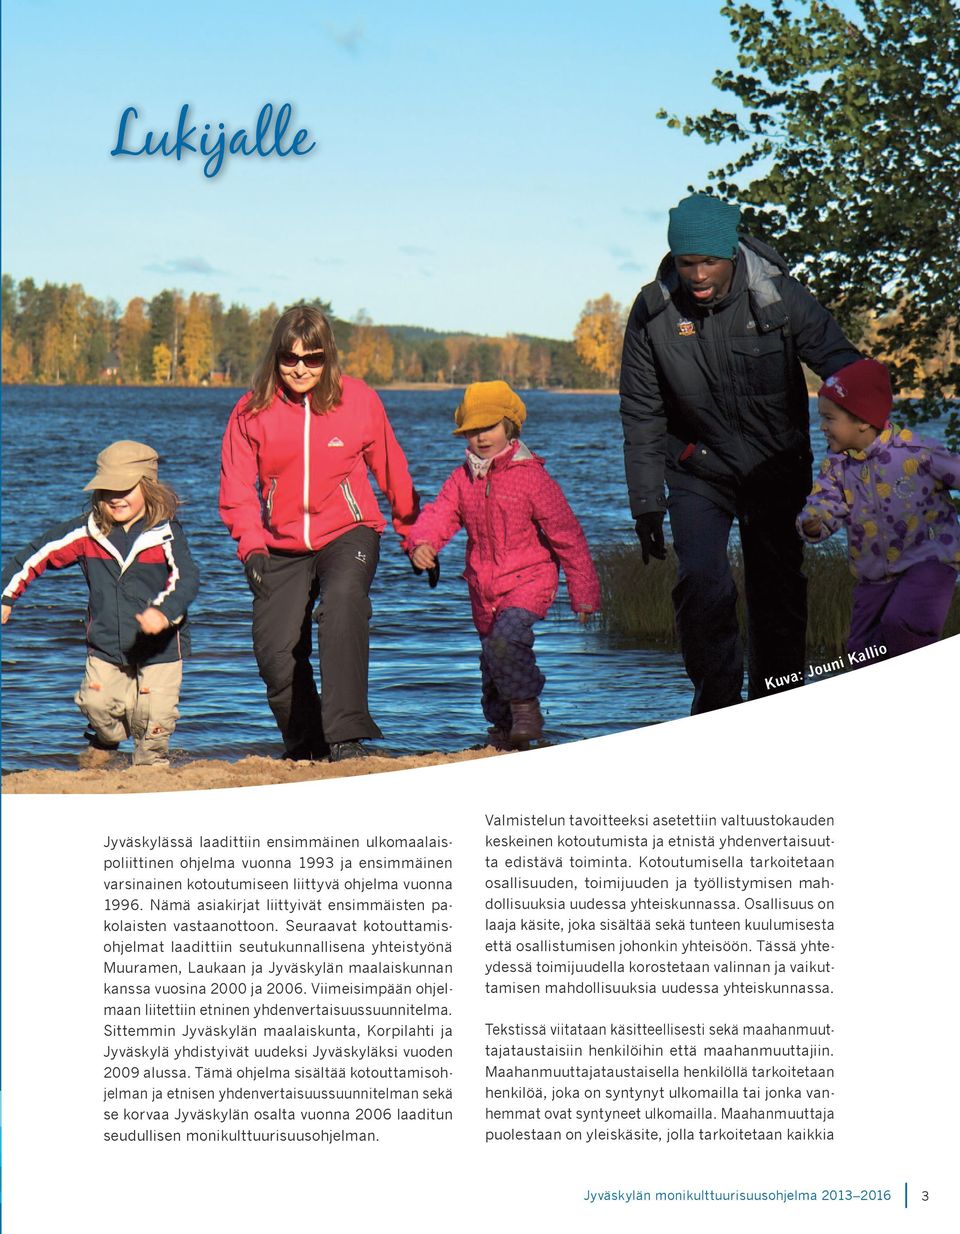 Seuraavat kotouttamisohjelmat laadittiin seutukunnallisena yhteistyönä Muuramen, Laukaan ja Jyväskylän maalaiskunnan kanssa vuosina 2000 ja 2006.